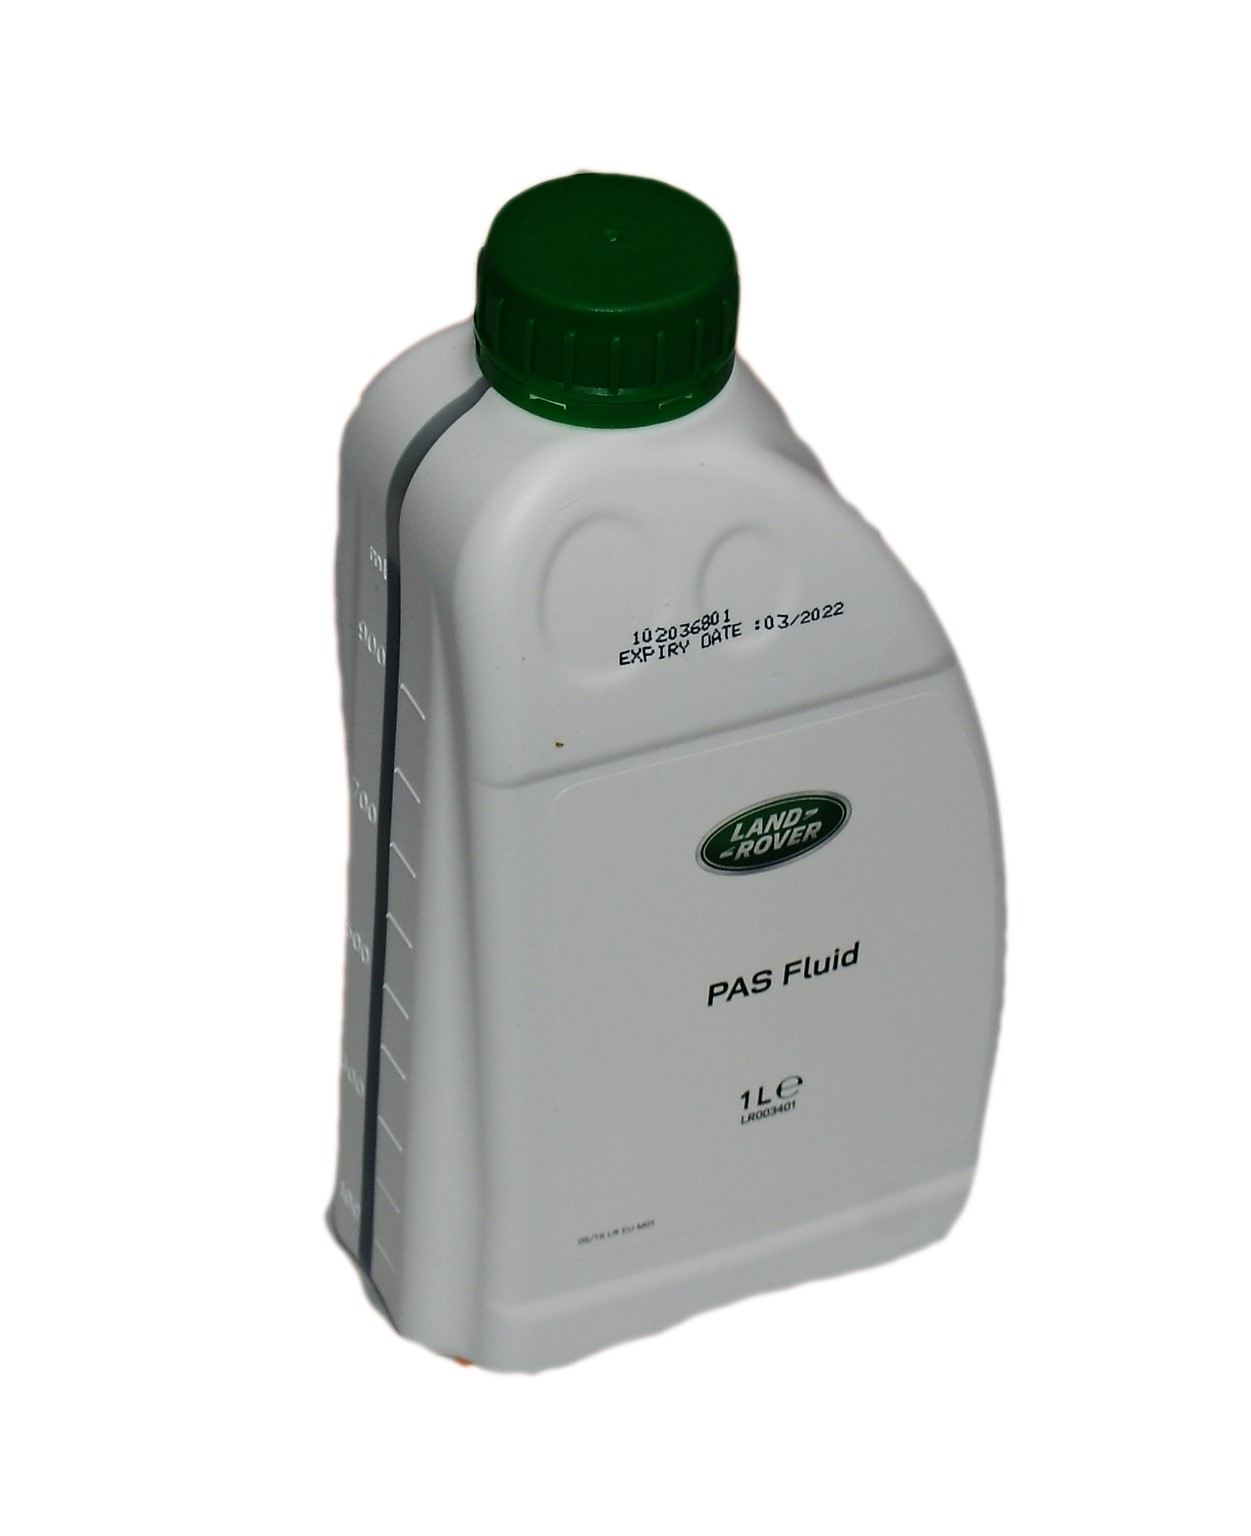 Жидкость гидроусилителя (фасовка 1 литр) (LR003401||LAND ROVER)